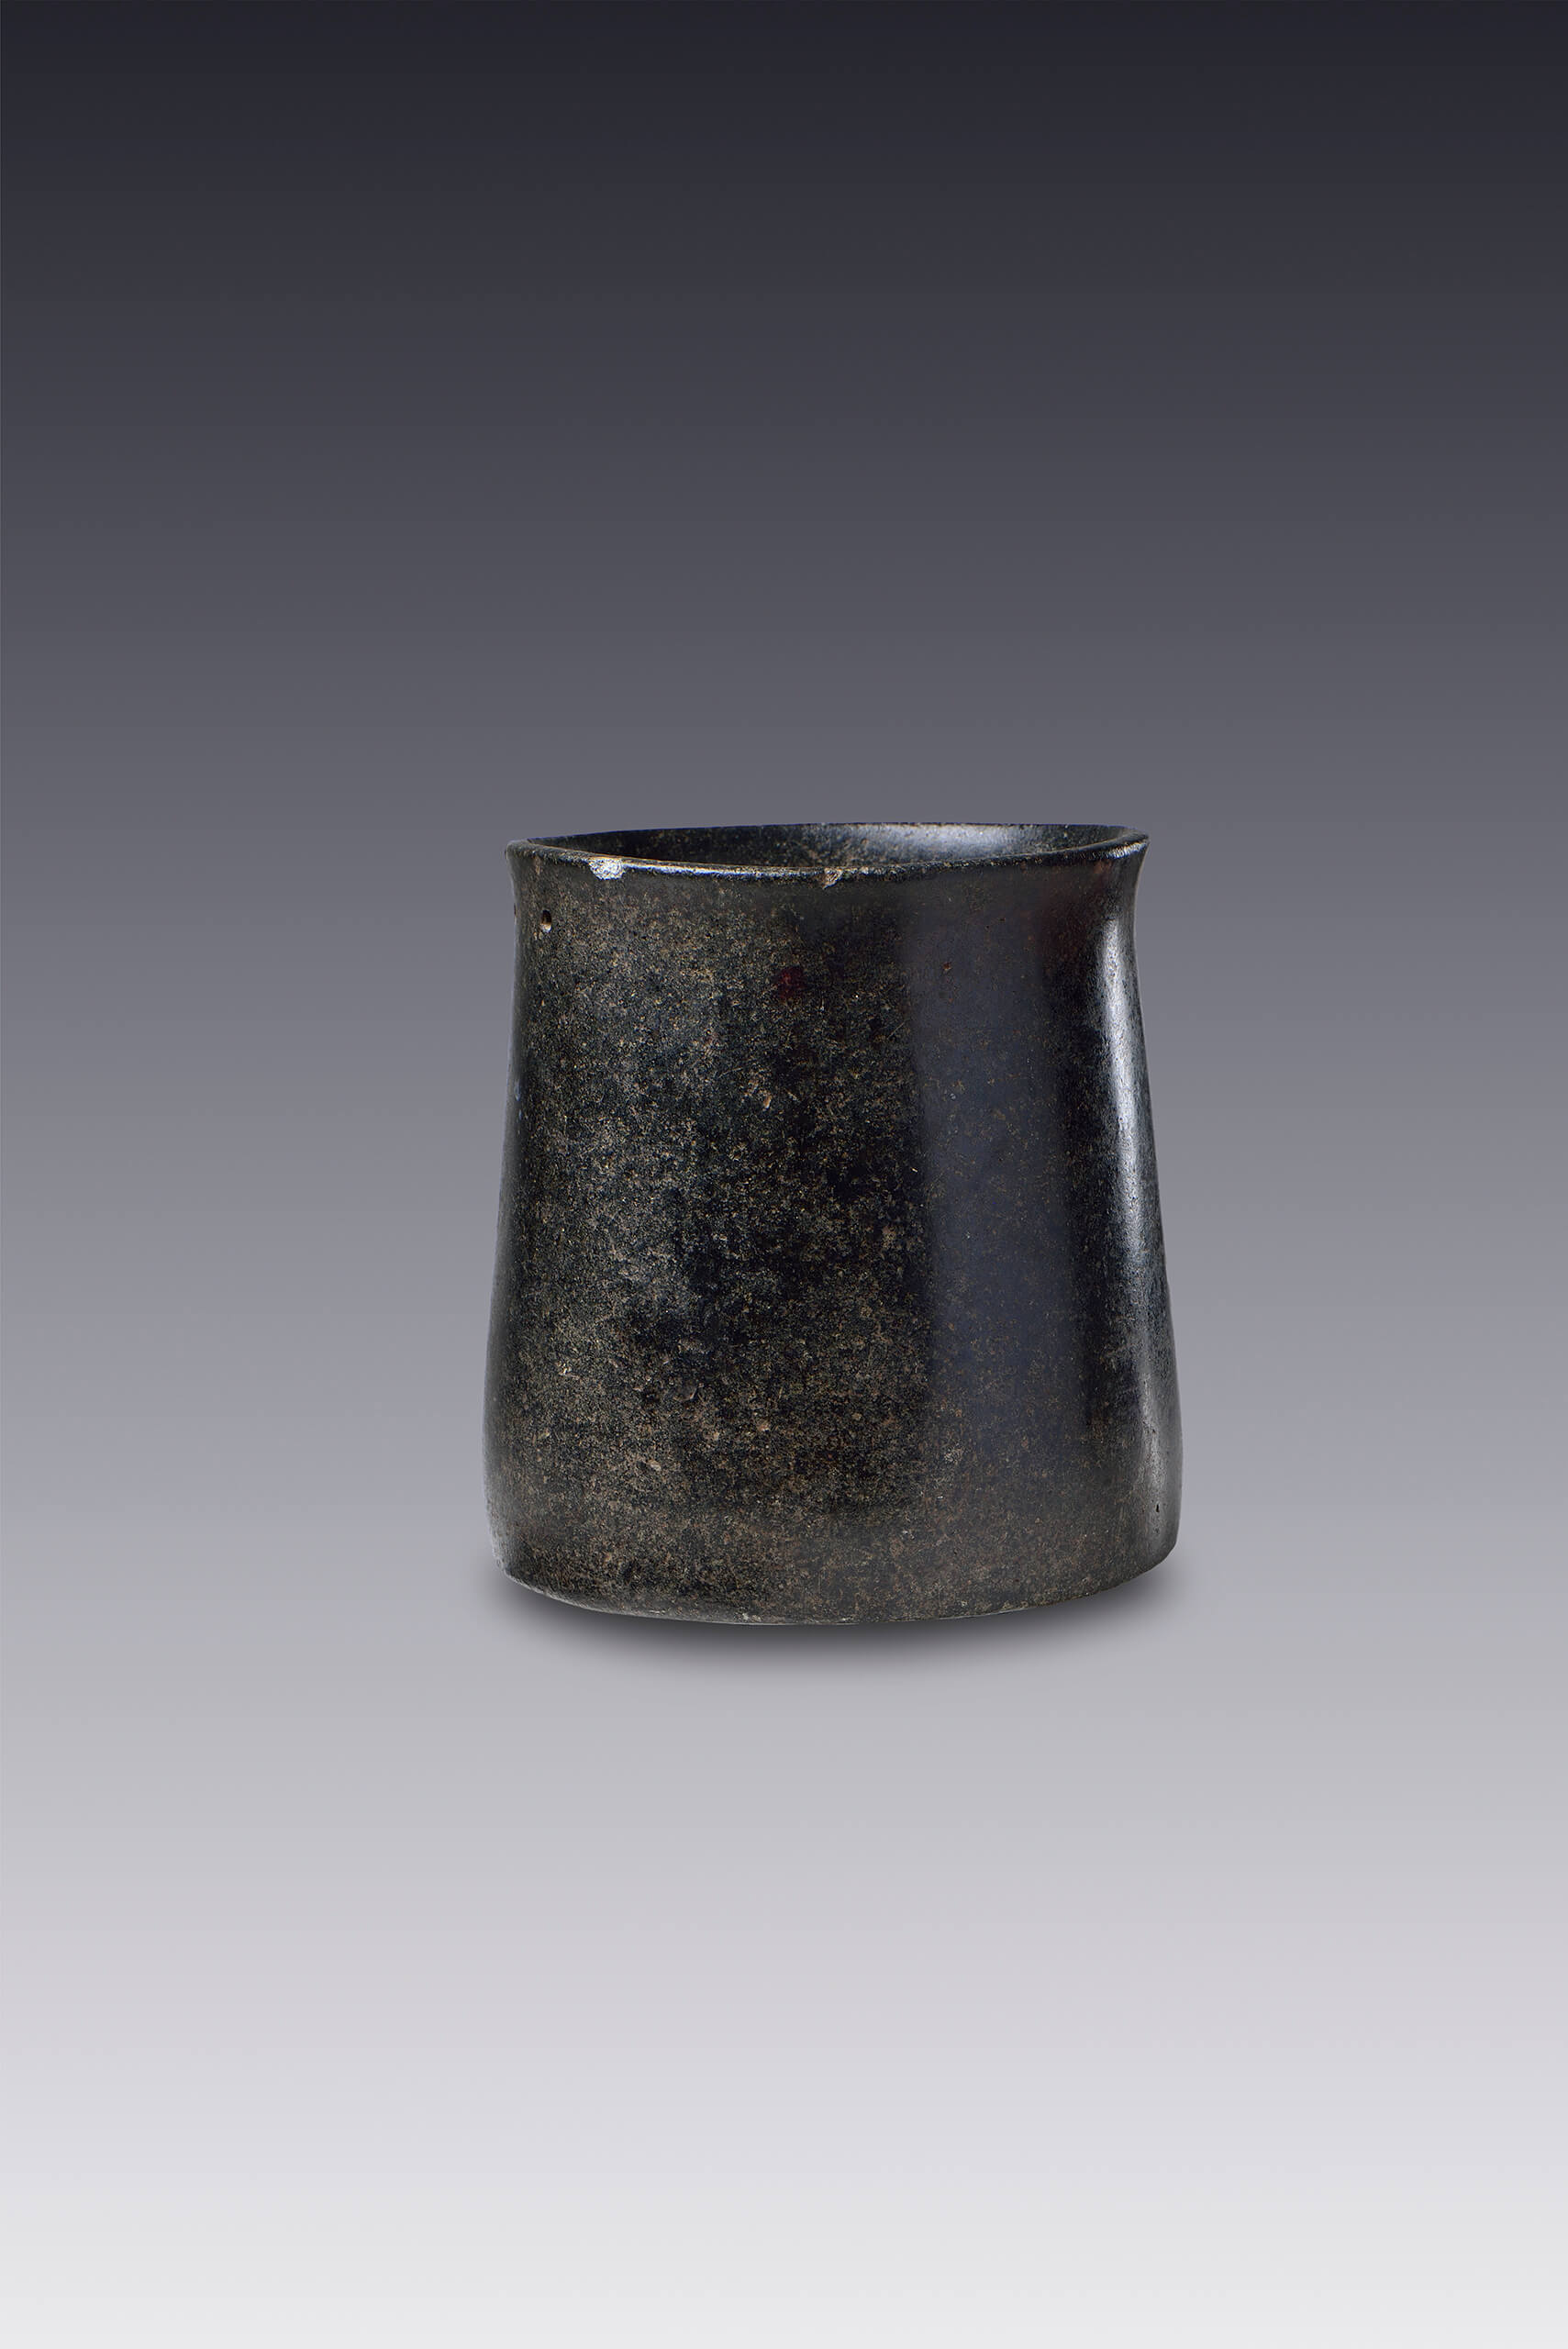 Vaso de piedra con forma de canasto | El México antiguo. Salas de Arte Prehispánico | Museo Amparo, Puebla